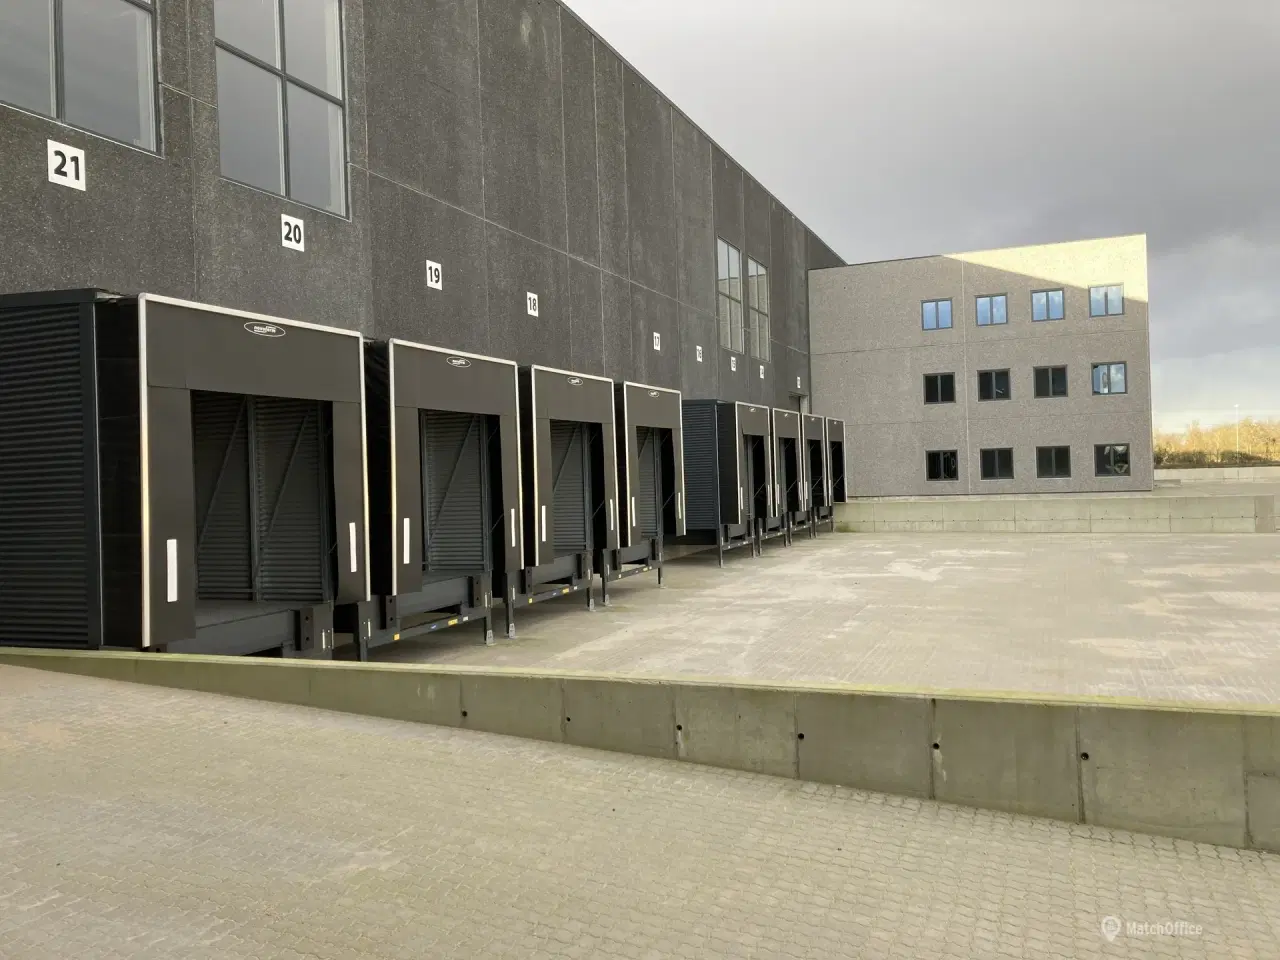 Billede 8 - 2.143 m2 Lager- Logistik-lejemål med 132 m2 kontor